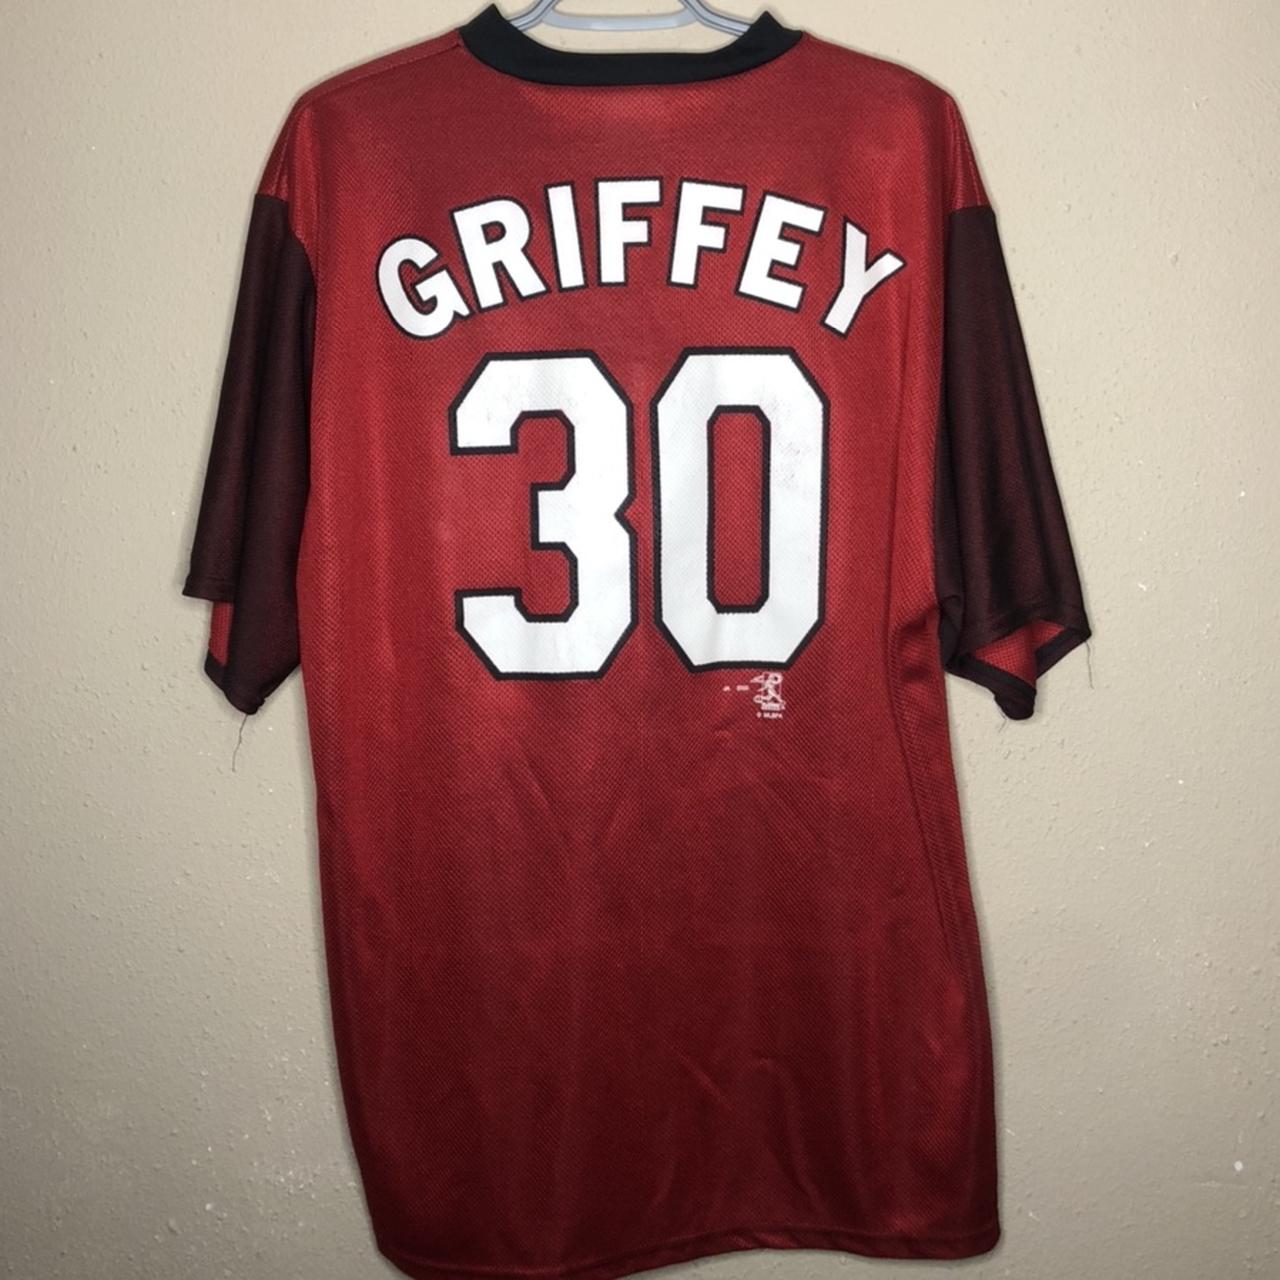 Vintage Majestic Cincinnati Reds Jersey ⚾️ Griffey - Depop